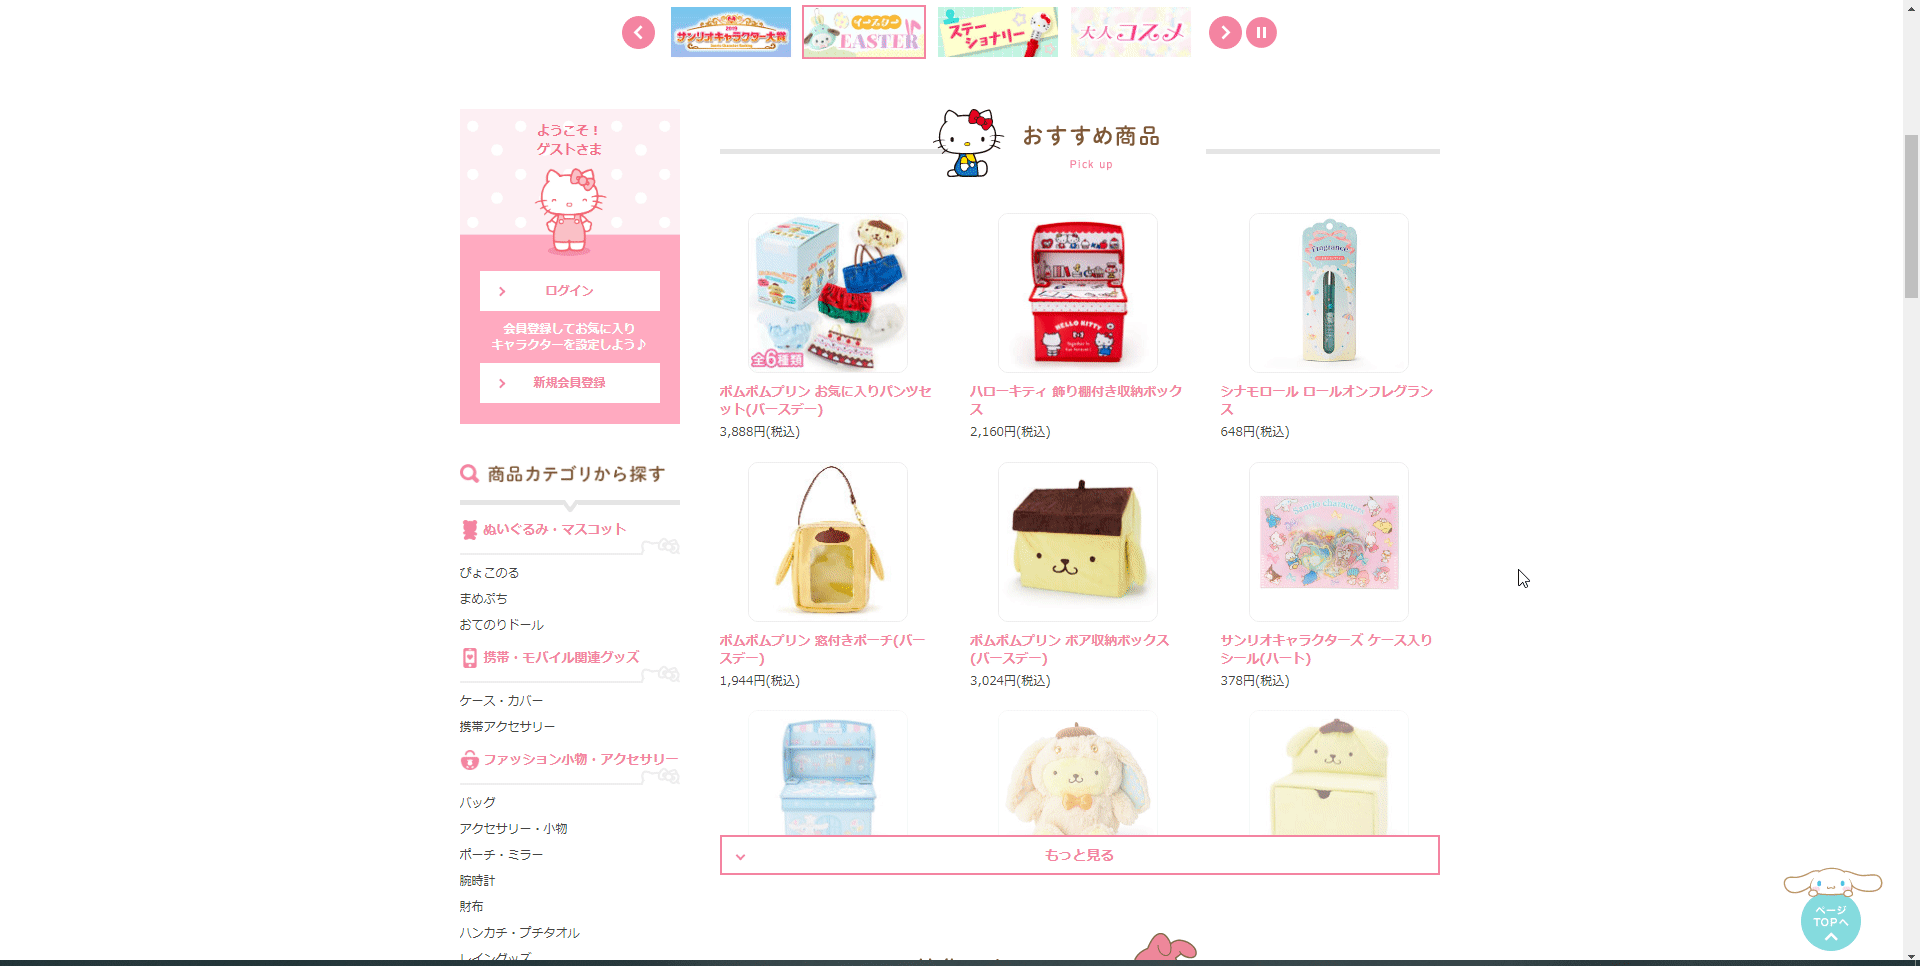 Traduci il sito ufficiale Sanrio in inglese